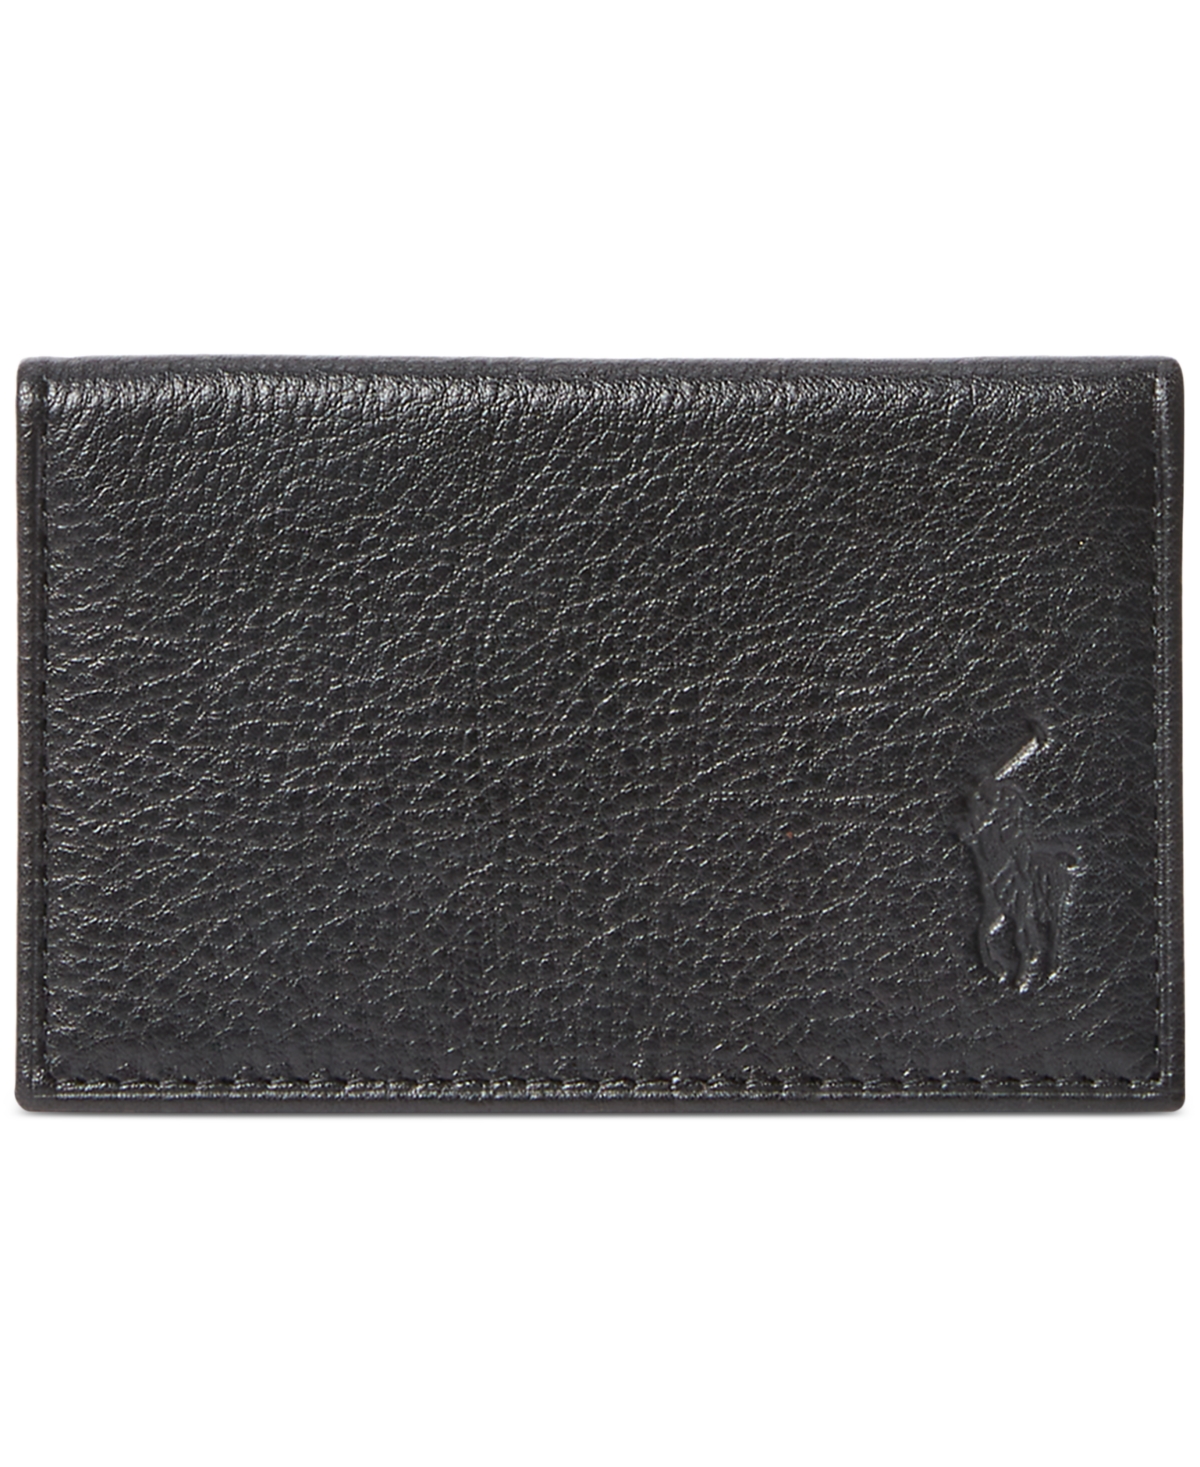 Men's Pebbled Leather Card Wallet - Black